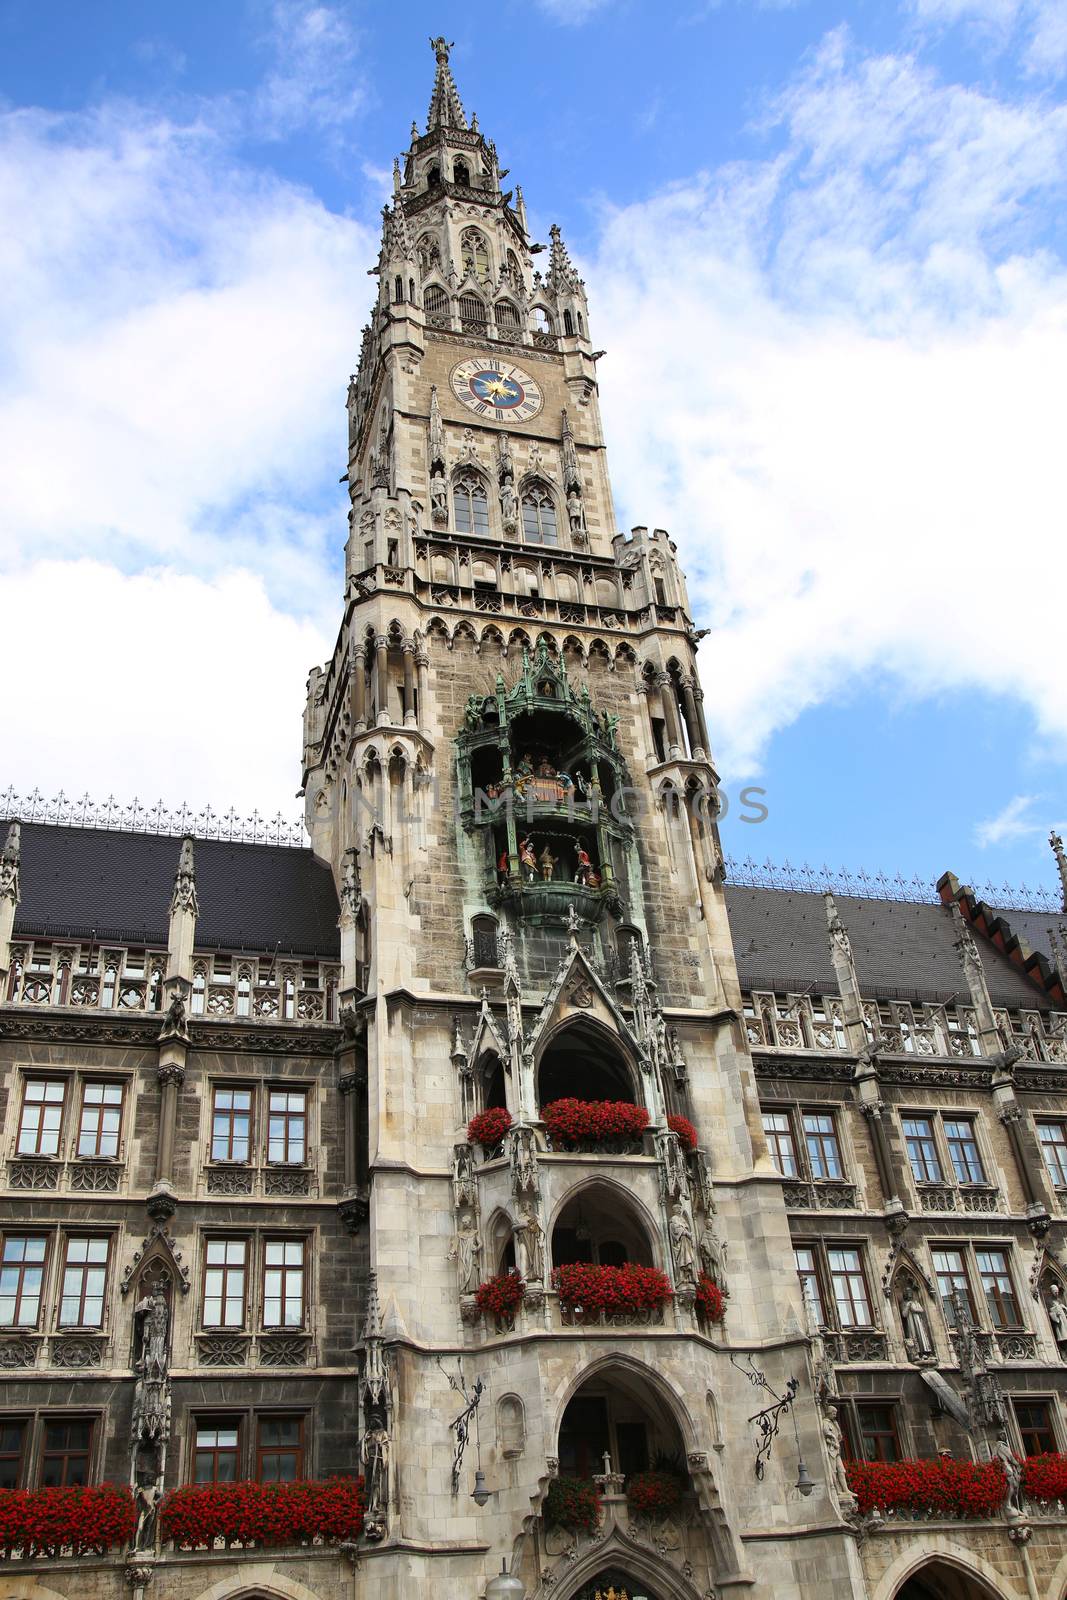 Town Hall (Rathaus) in Marienplatz, Munich, Germany  by vladacanon